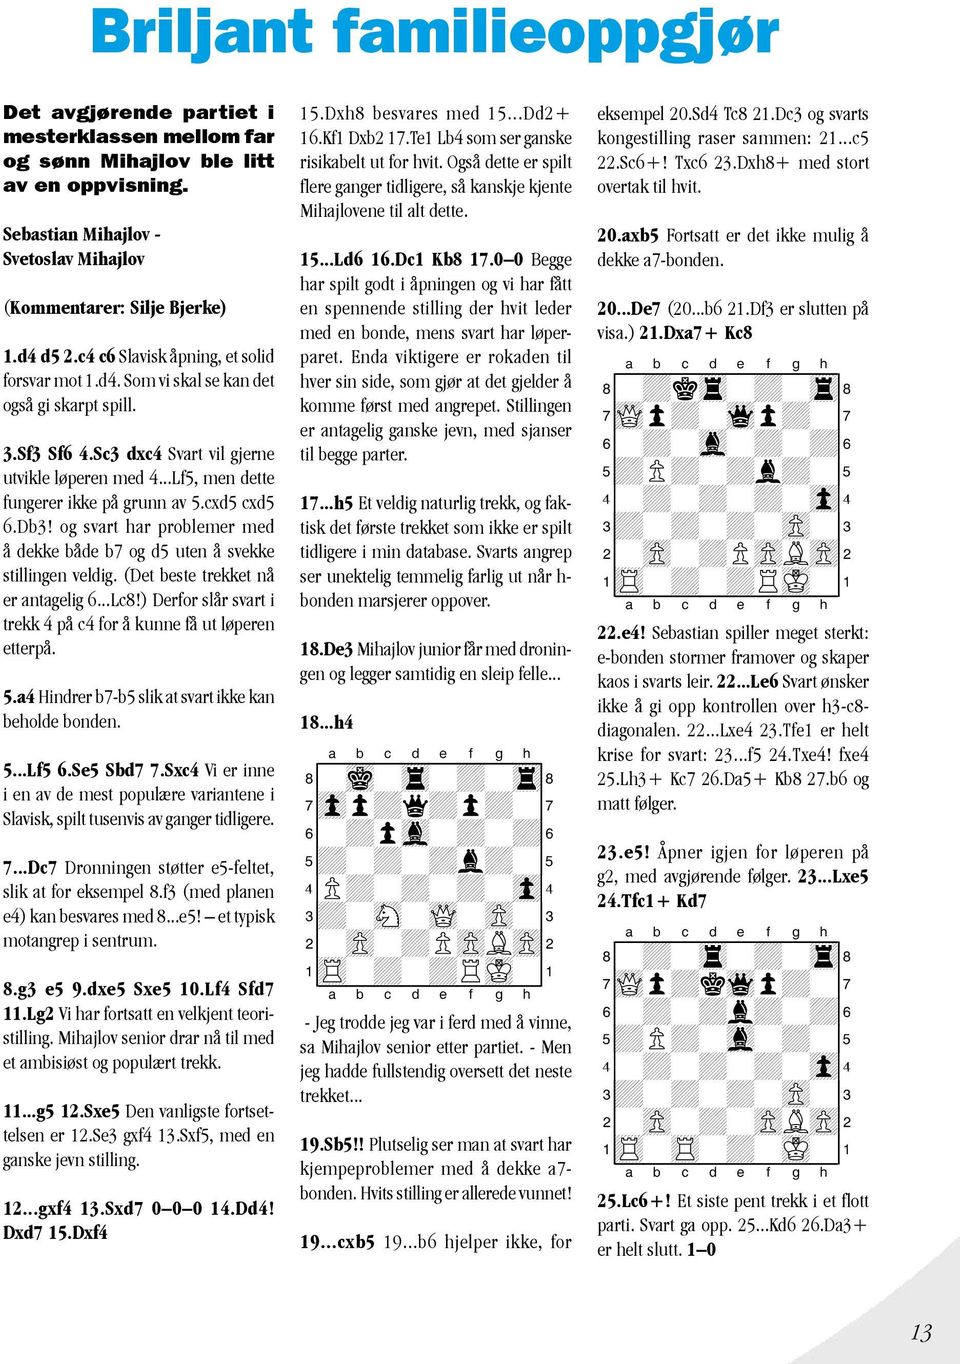 cxd5 cxd5 6.Db3! og svart har problemer med å dekke både b7 og d5 uten å svekke stillingen veldig. (Det beste trekket nå er antagelig 6...Lc8!